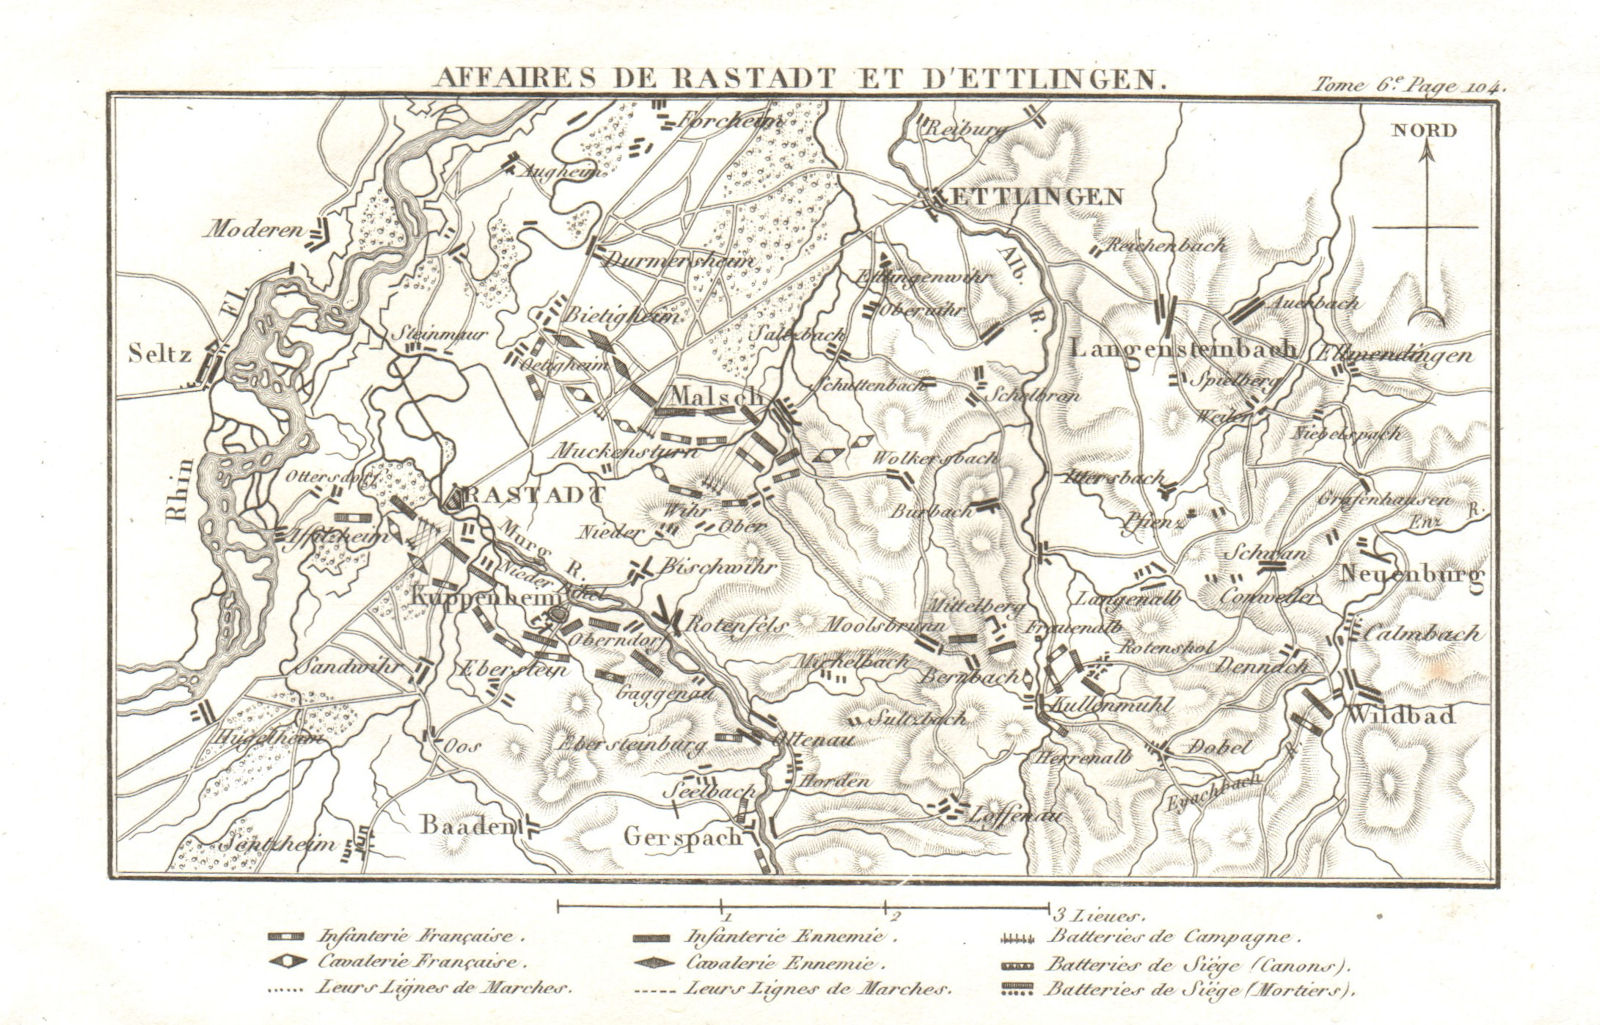 Battles of Rastatt & Ettlingen/Malsch 1796. War of the First Coalition 1818 map